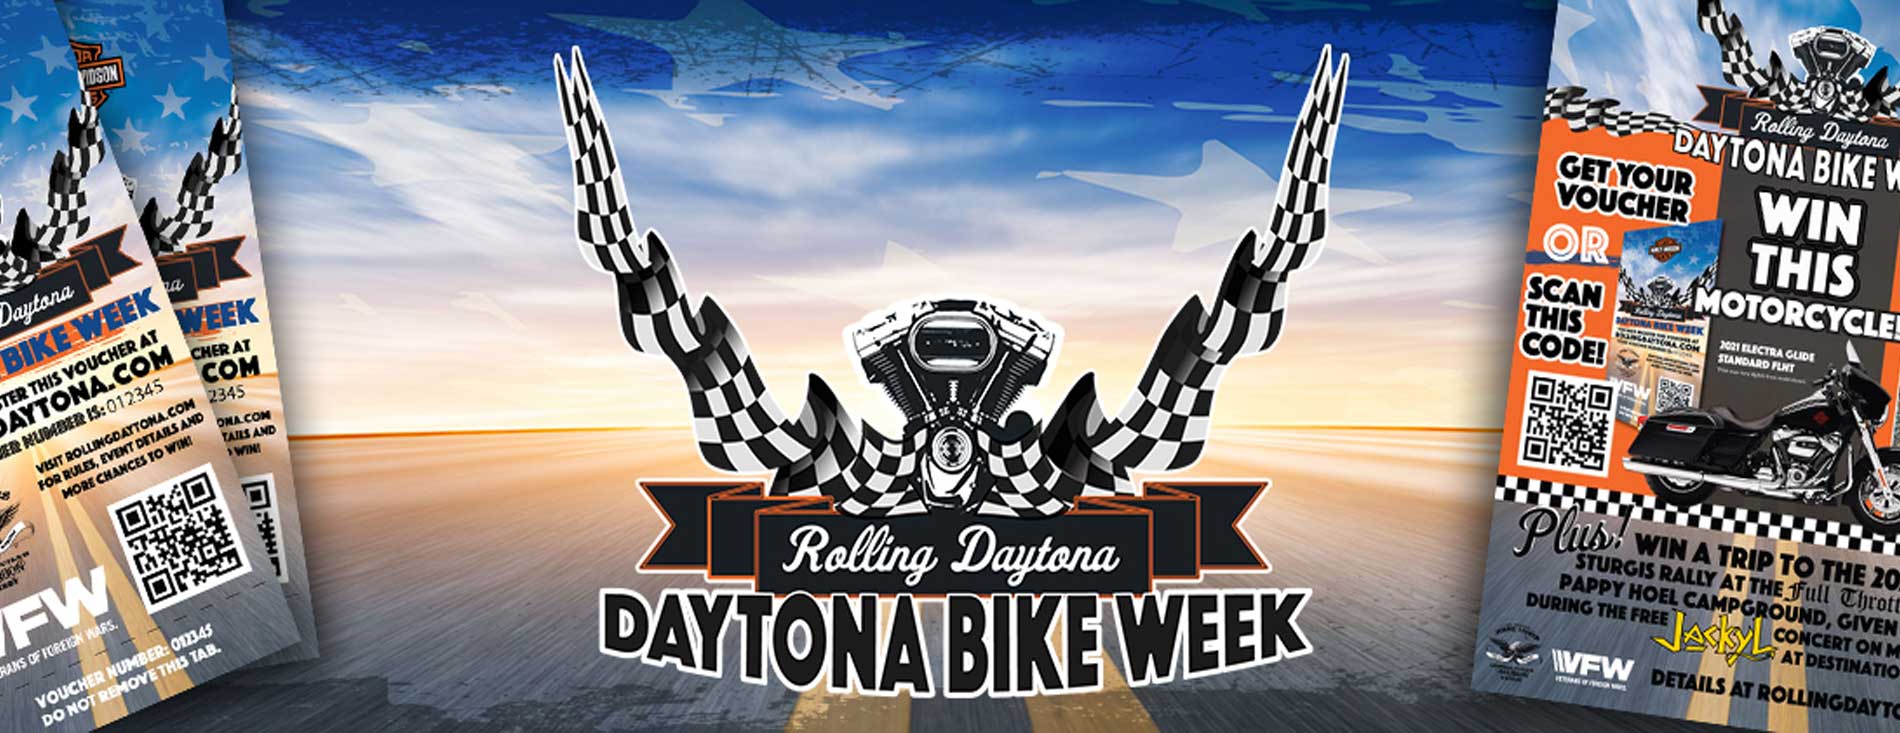 Rolling Daytona Worth HarleyDavidson